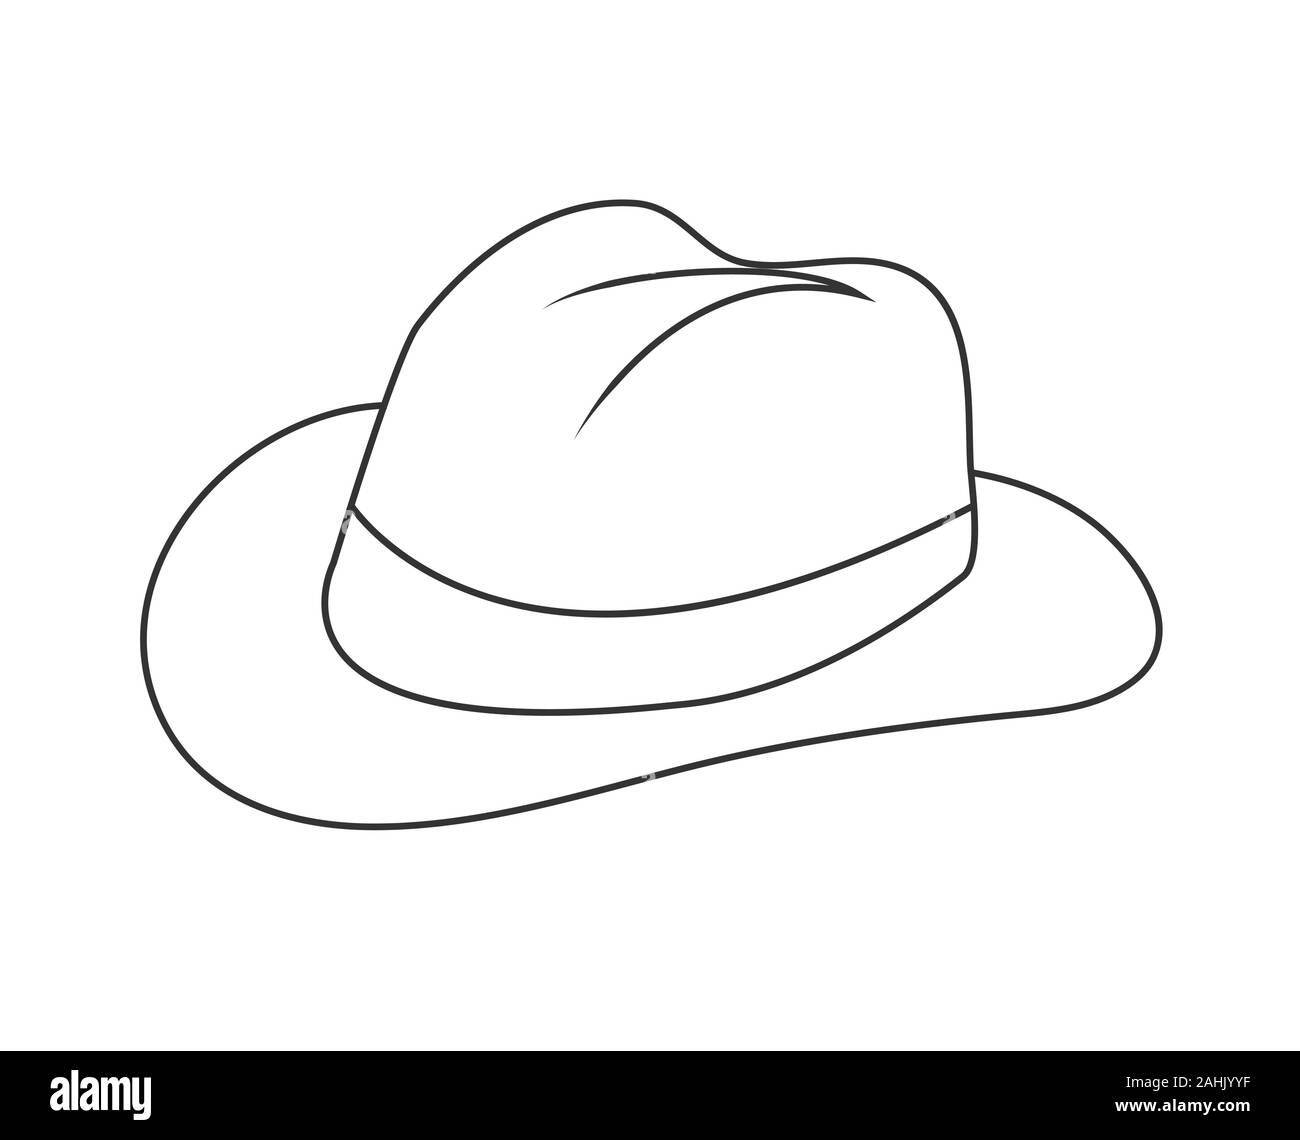 Vuoto il contorno di un cappello. Icona di acconciatura, hat. Profilo isolato su uno sfondo bianco. Uno stile piatto Illustrazione Vettoriale